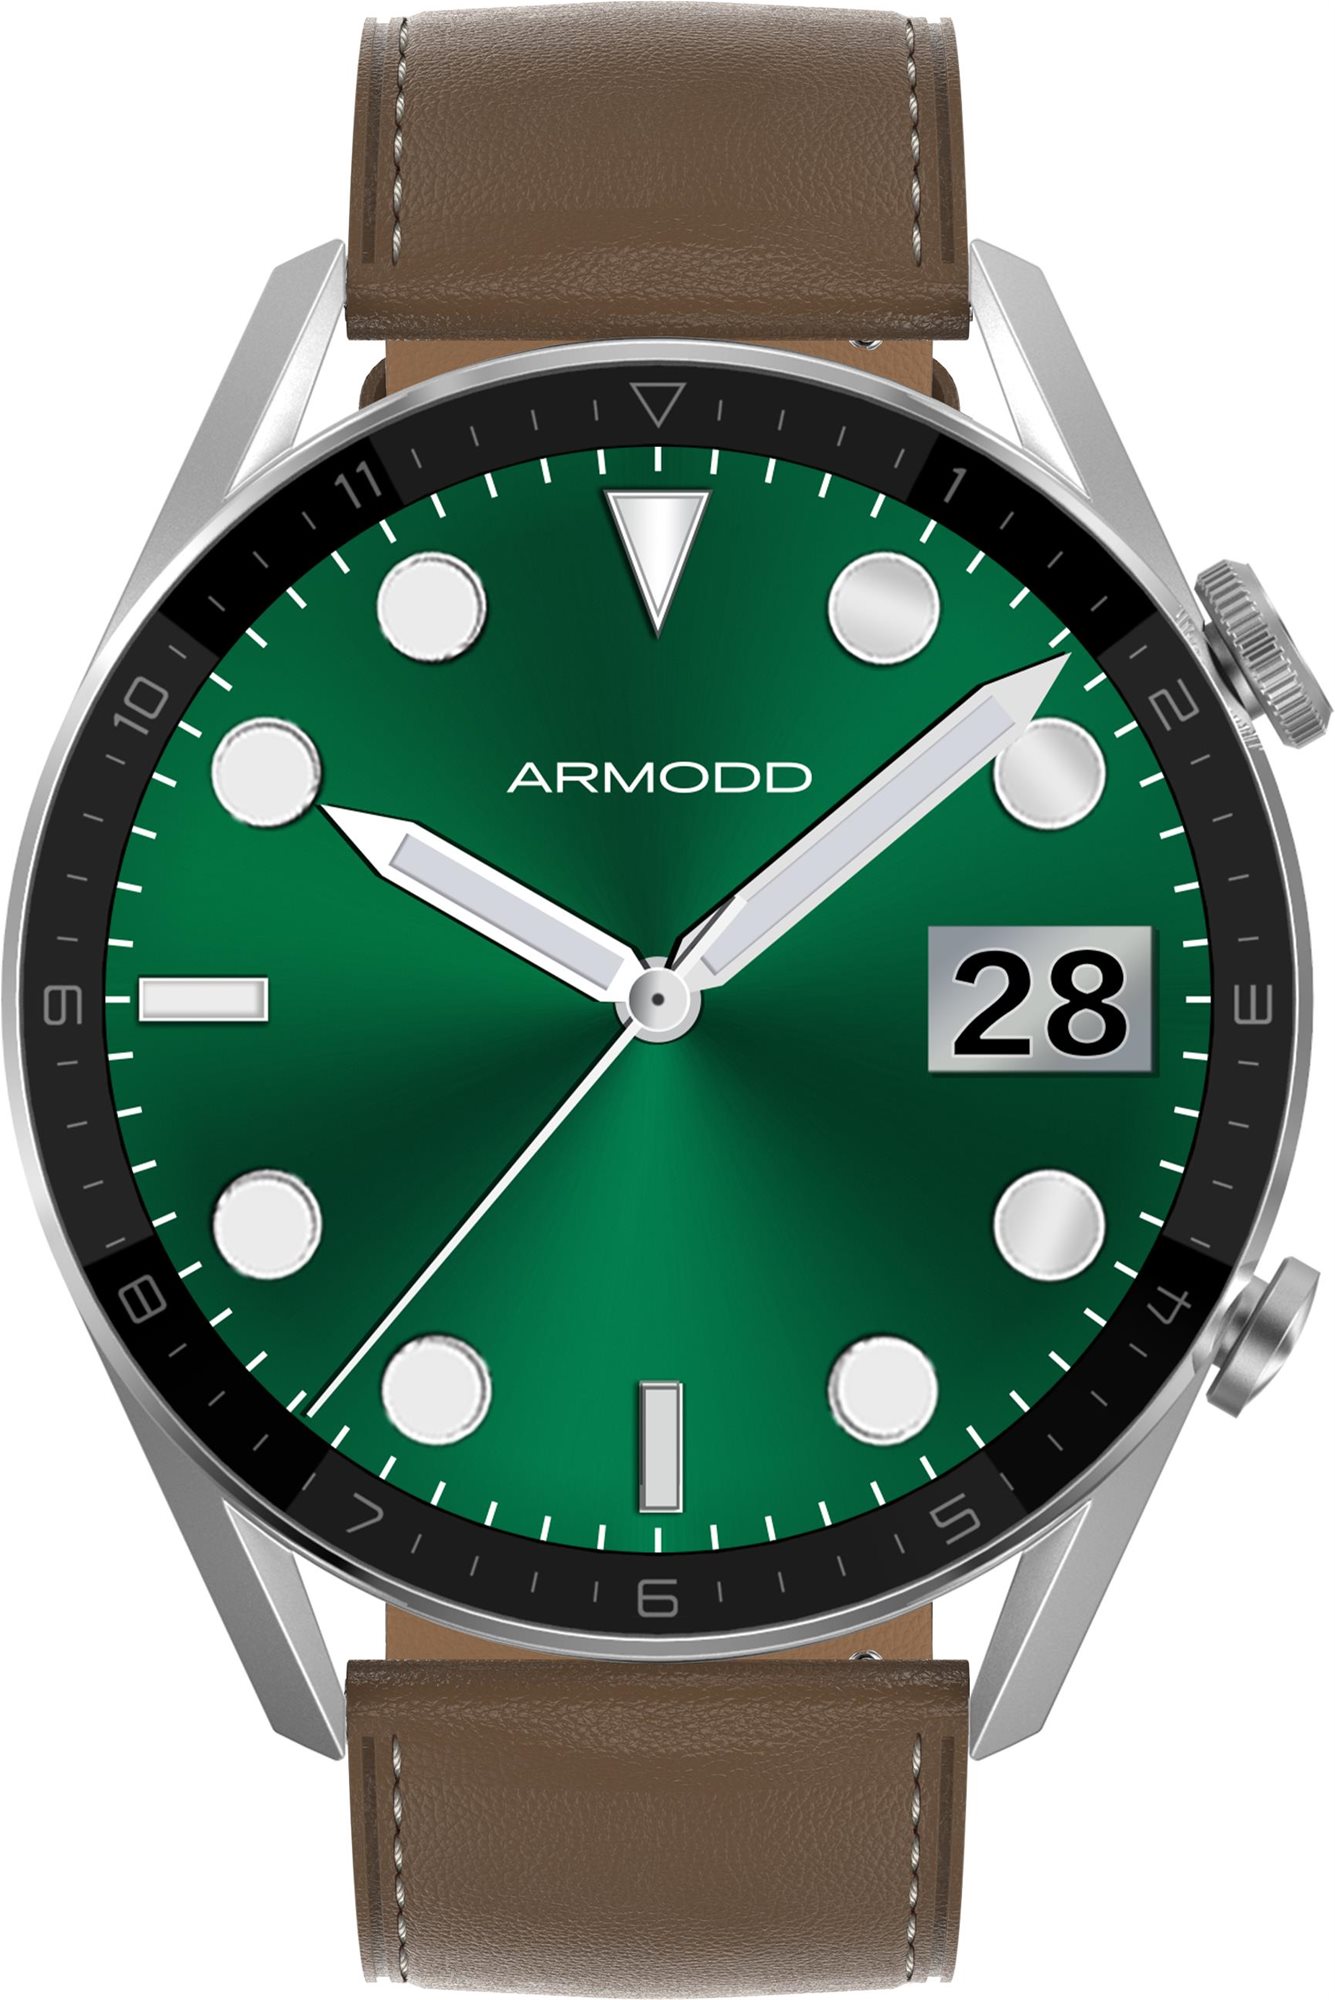 Chytré hodinky ARMODD Silentwatch 5 Pro stříbrná/kůže